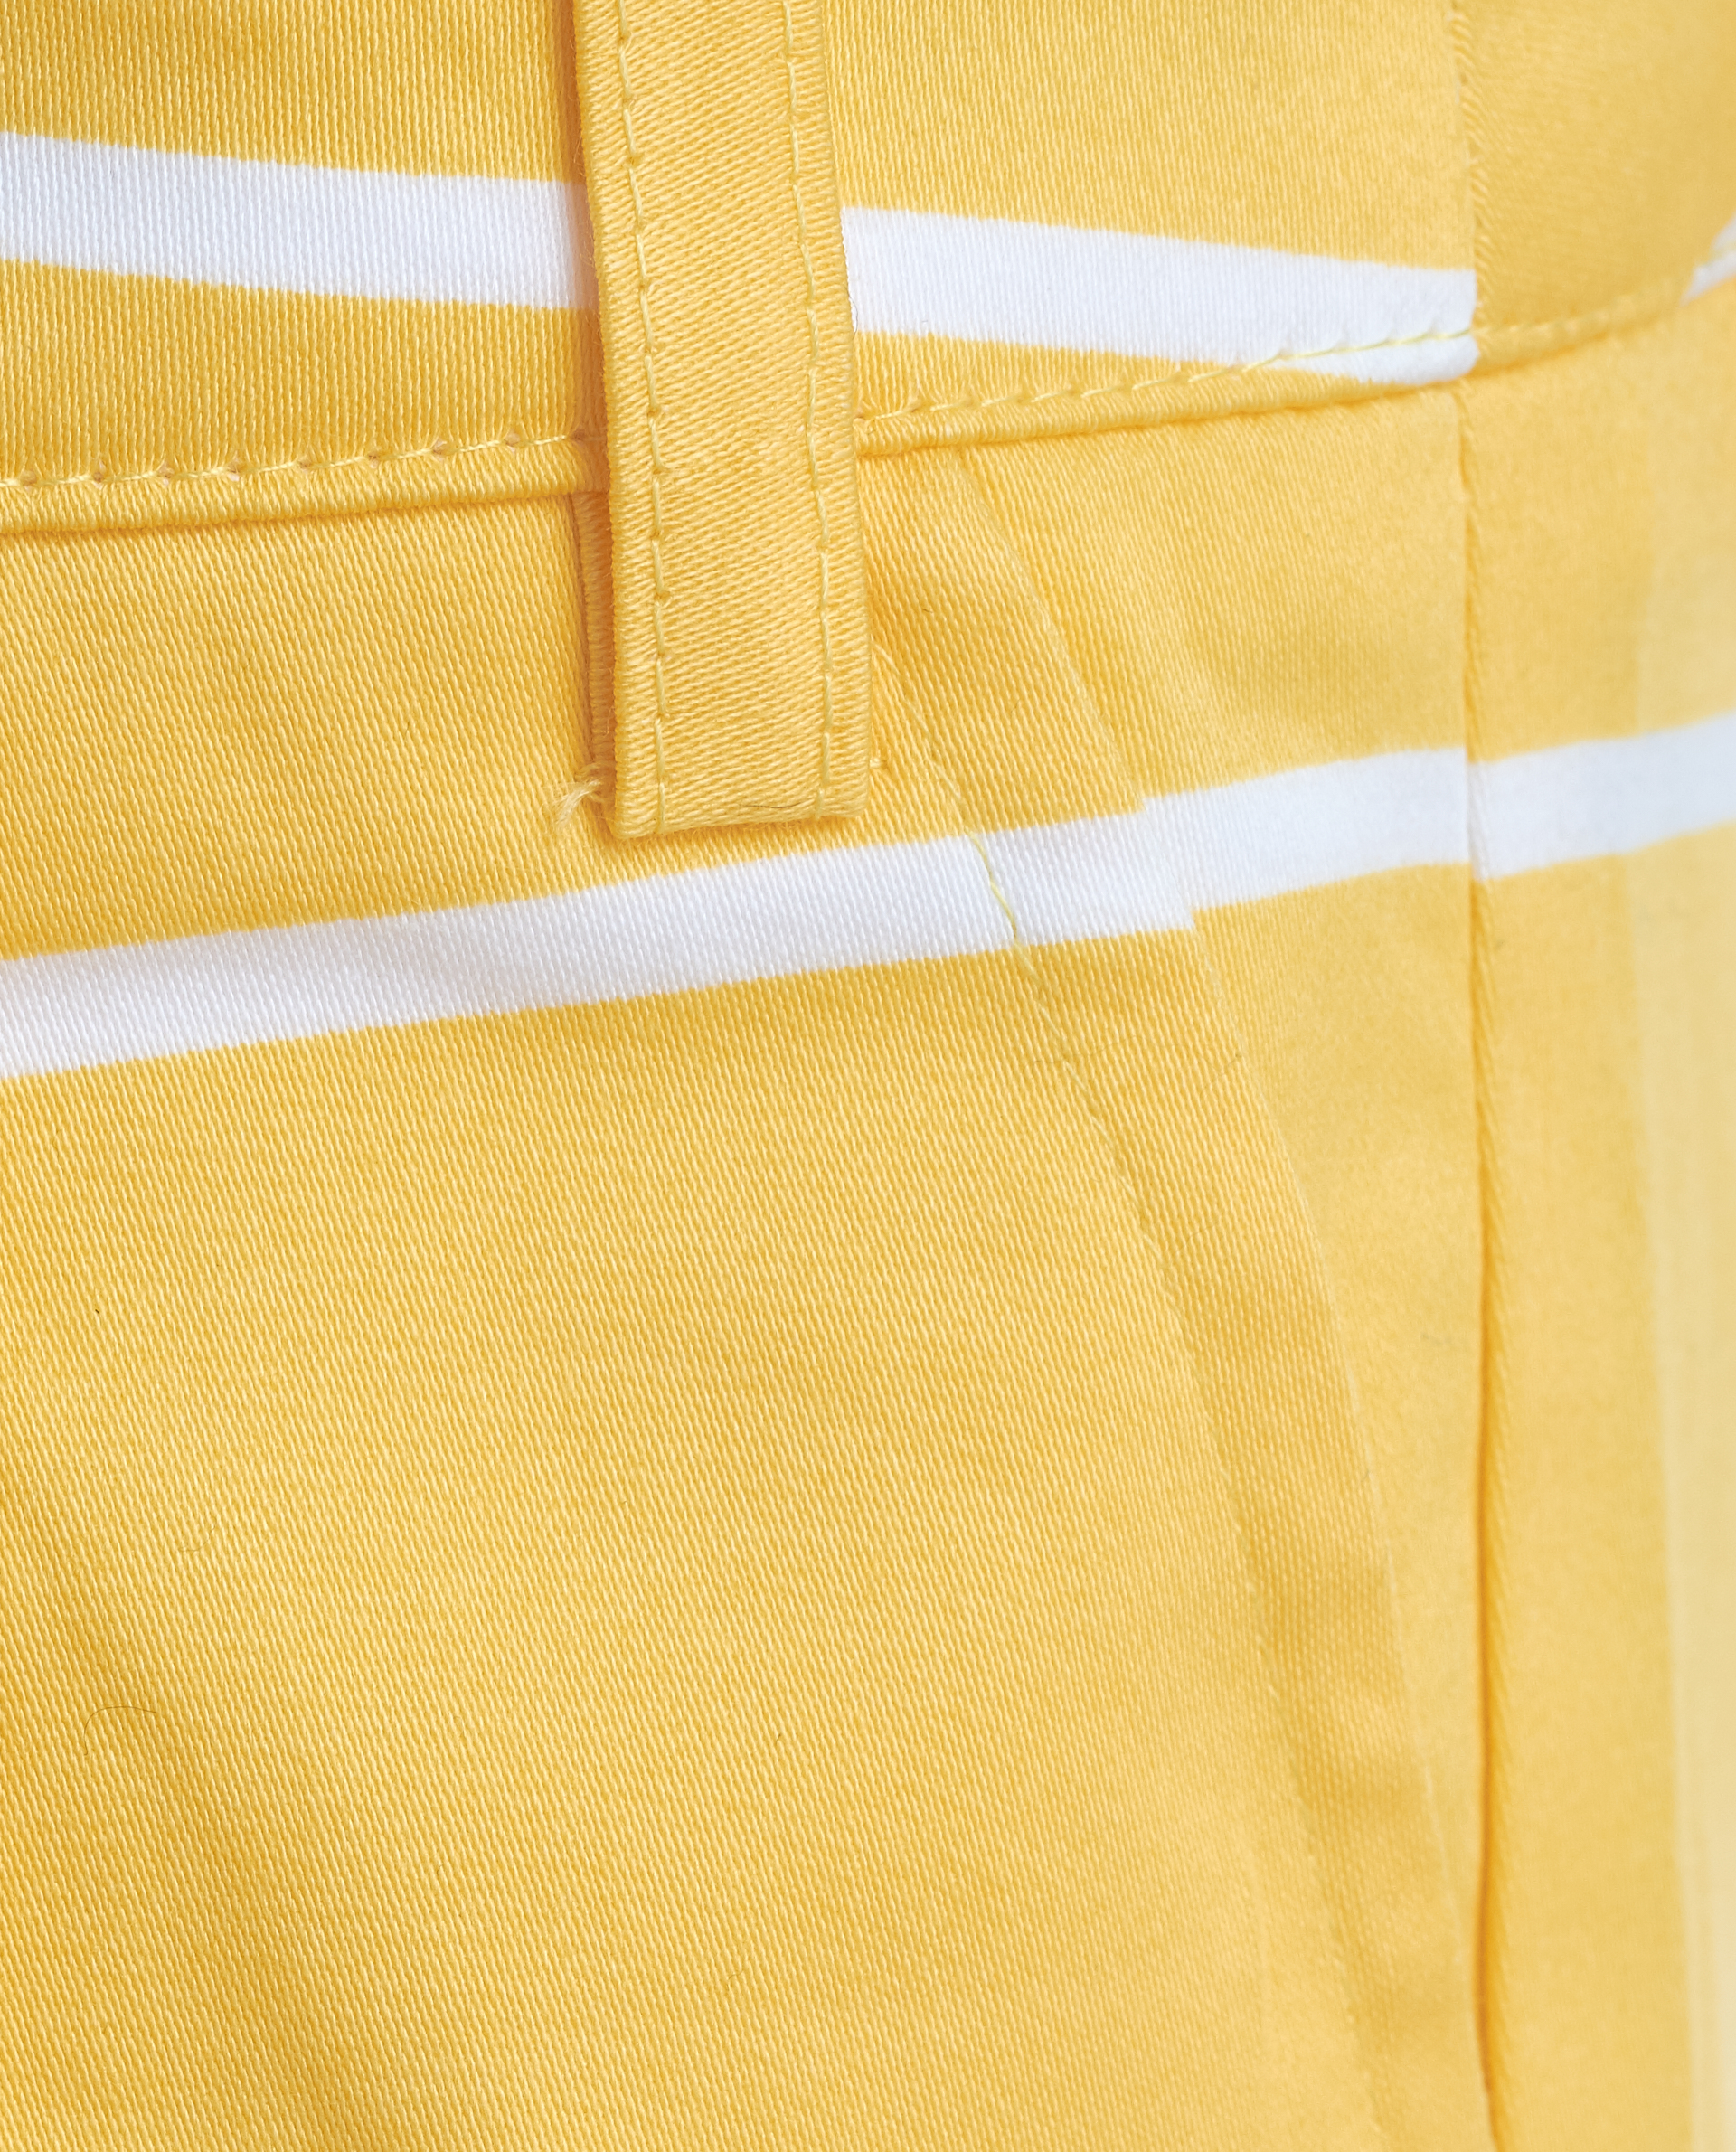 Желтые шорты Gulliver 11901GMC6003, размер 104, цвет желтый - фото 4